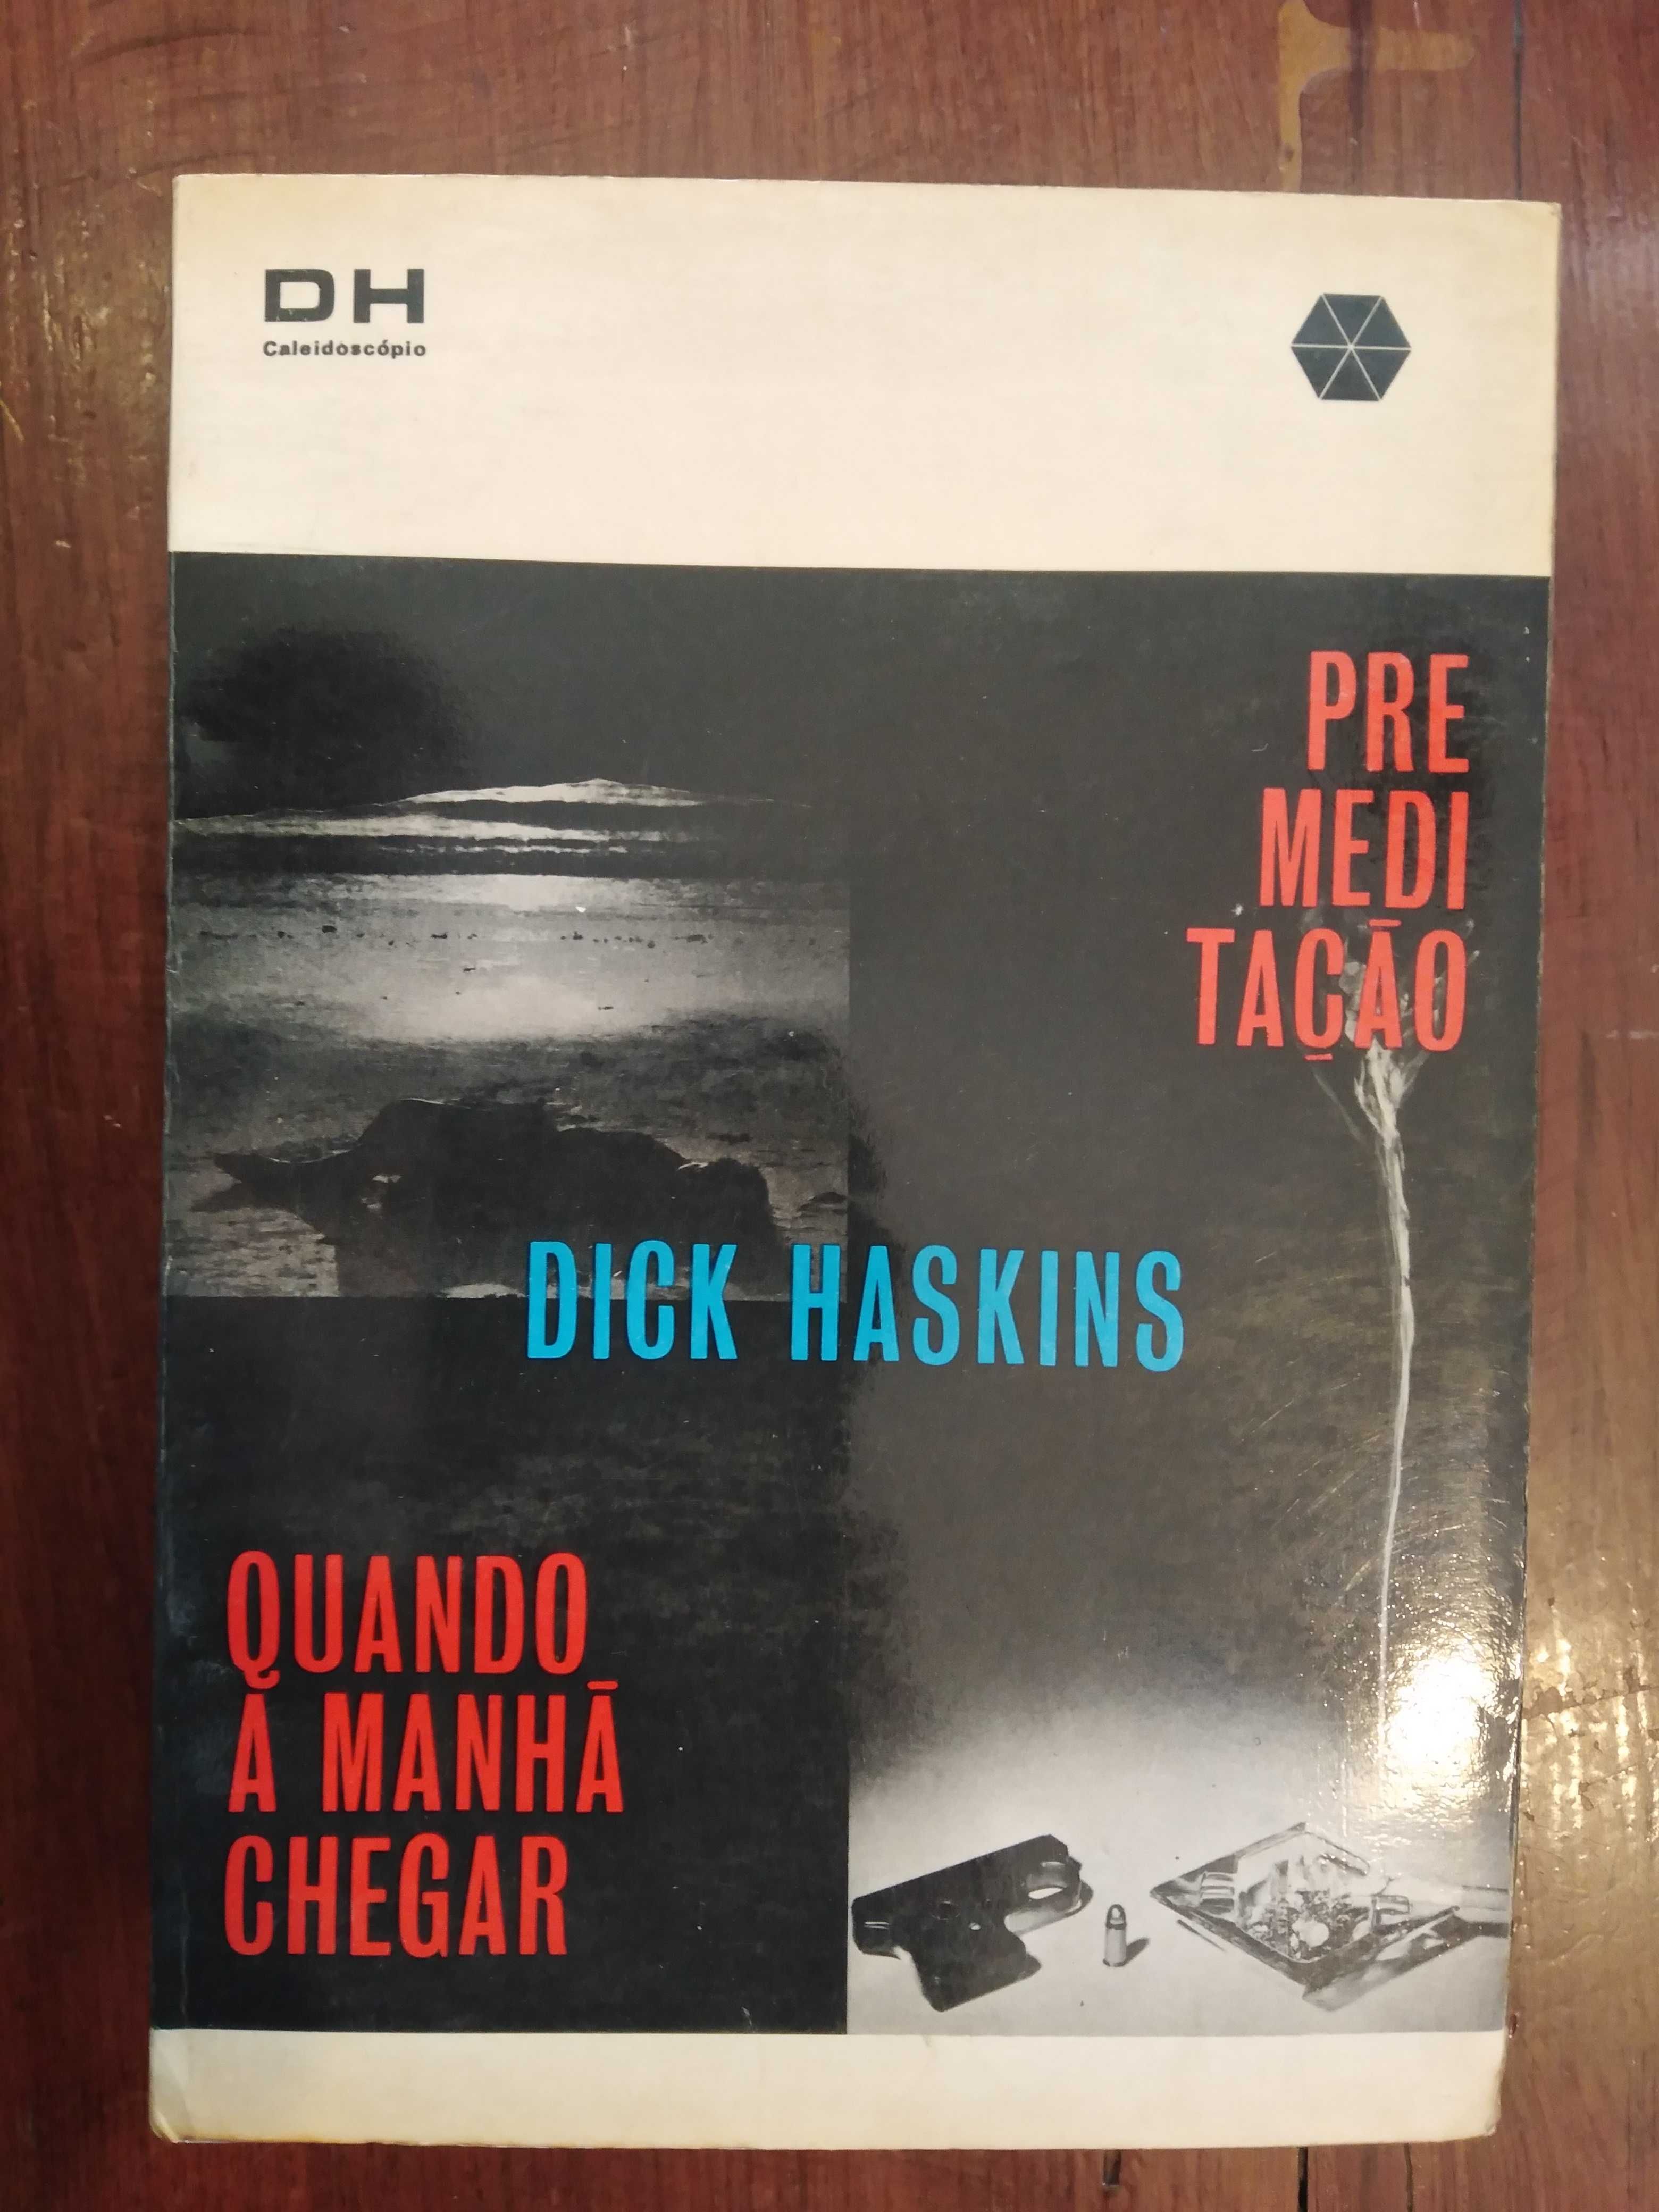 Dick Haskins - Premeditação / Quando a manhã chegar